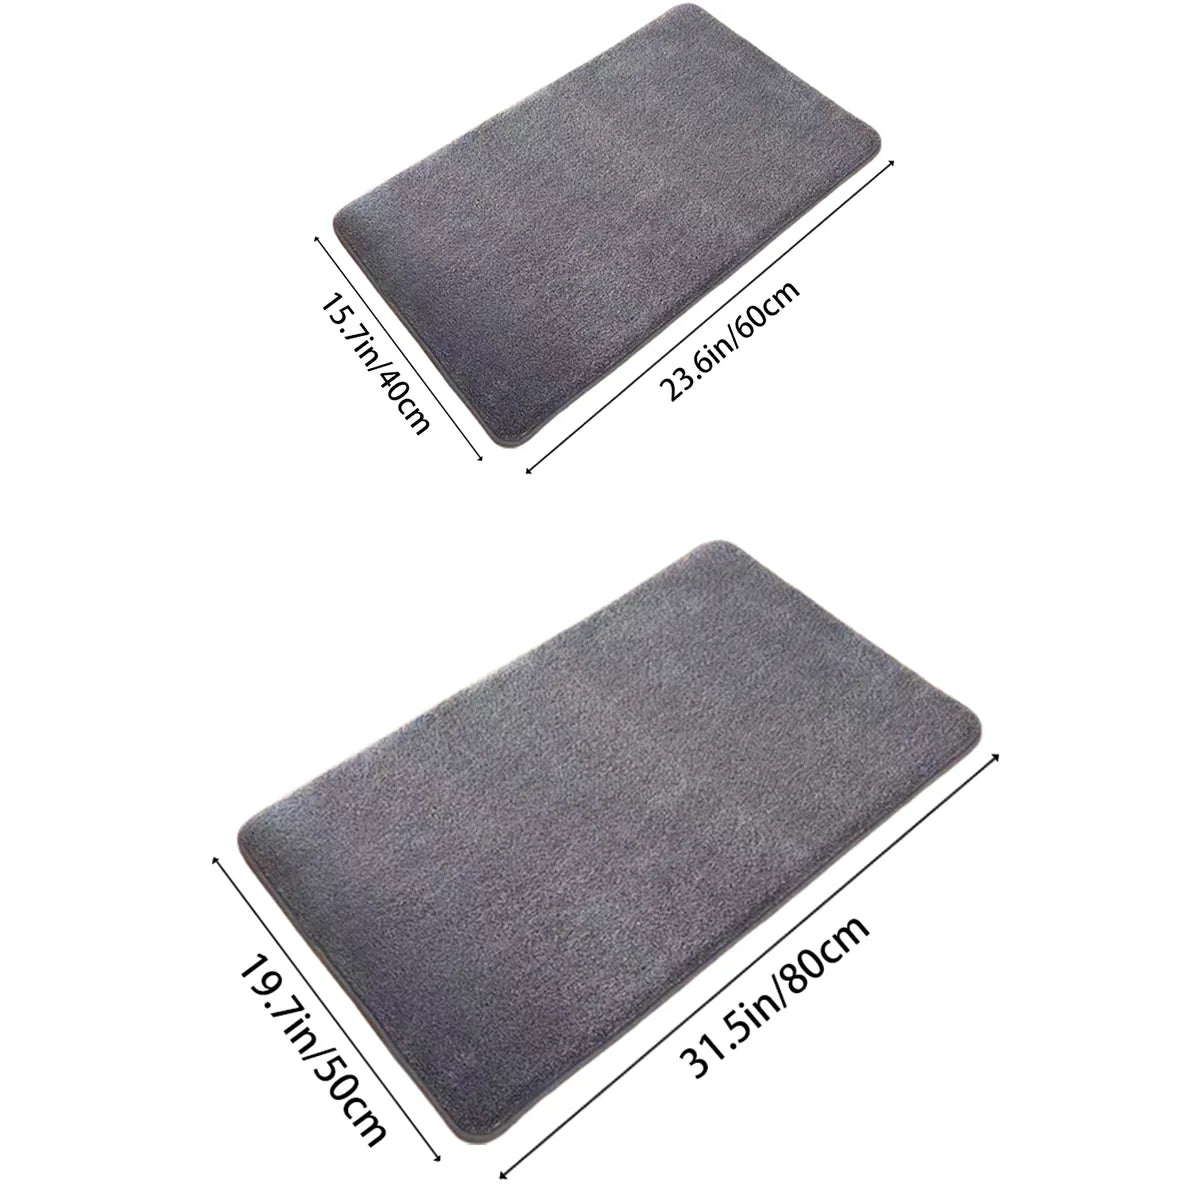 Super absorbent floor mat, super absorbent bath mat,